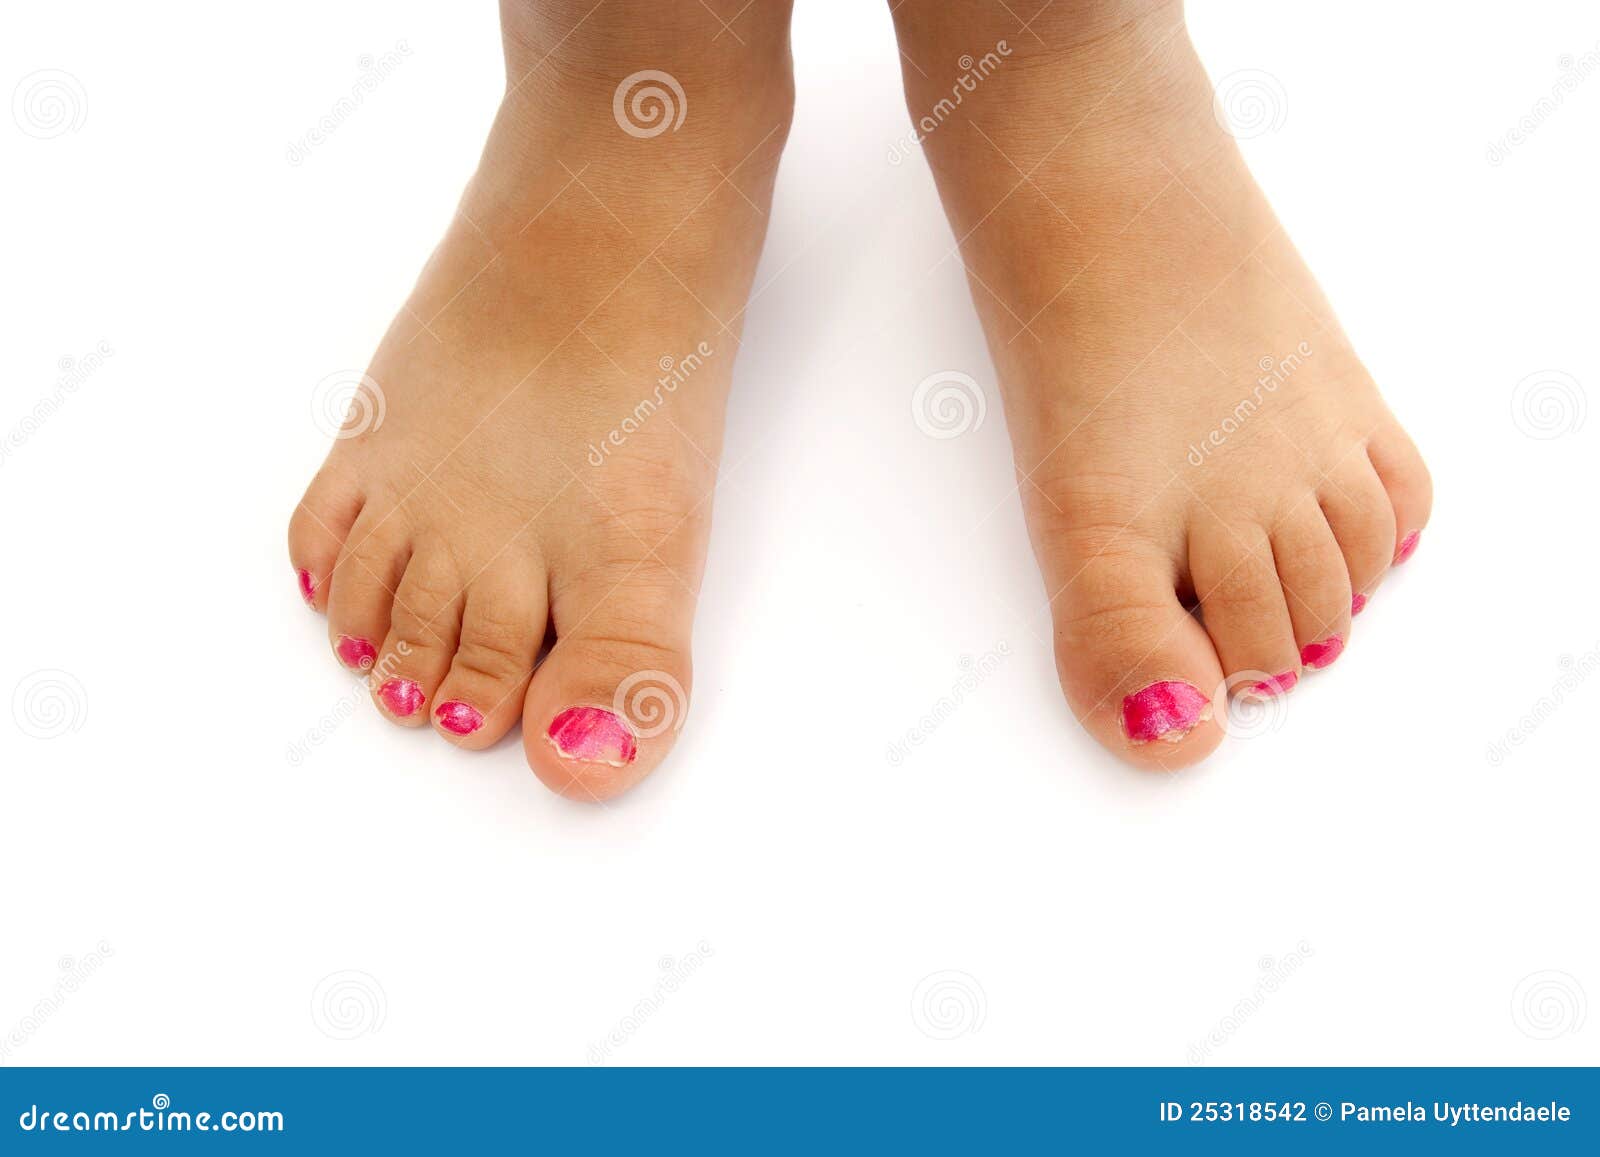 child's feet with nailpolish